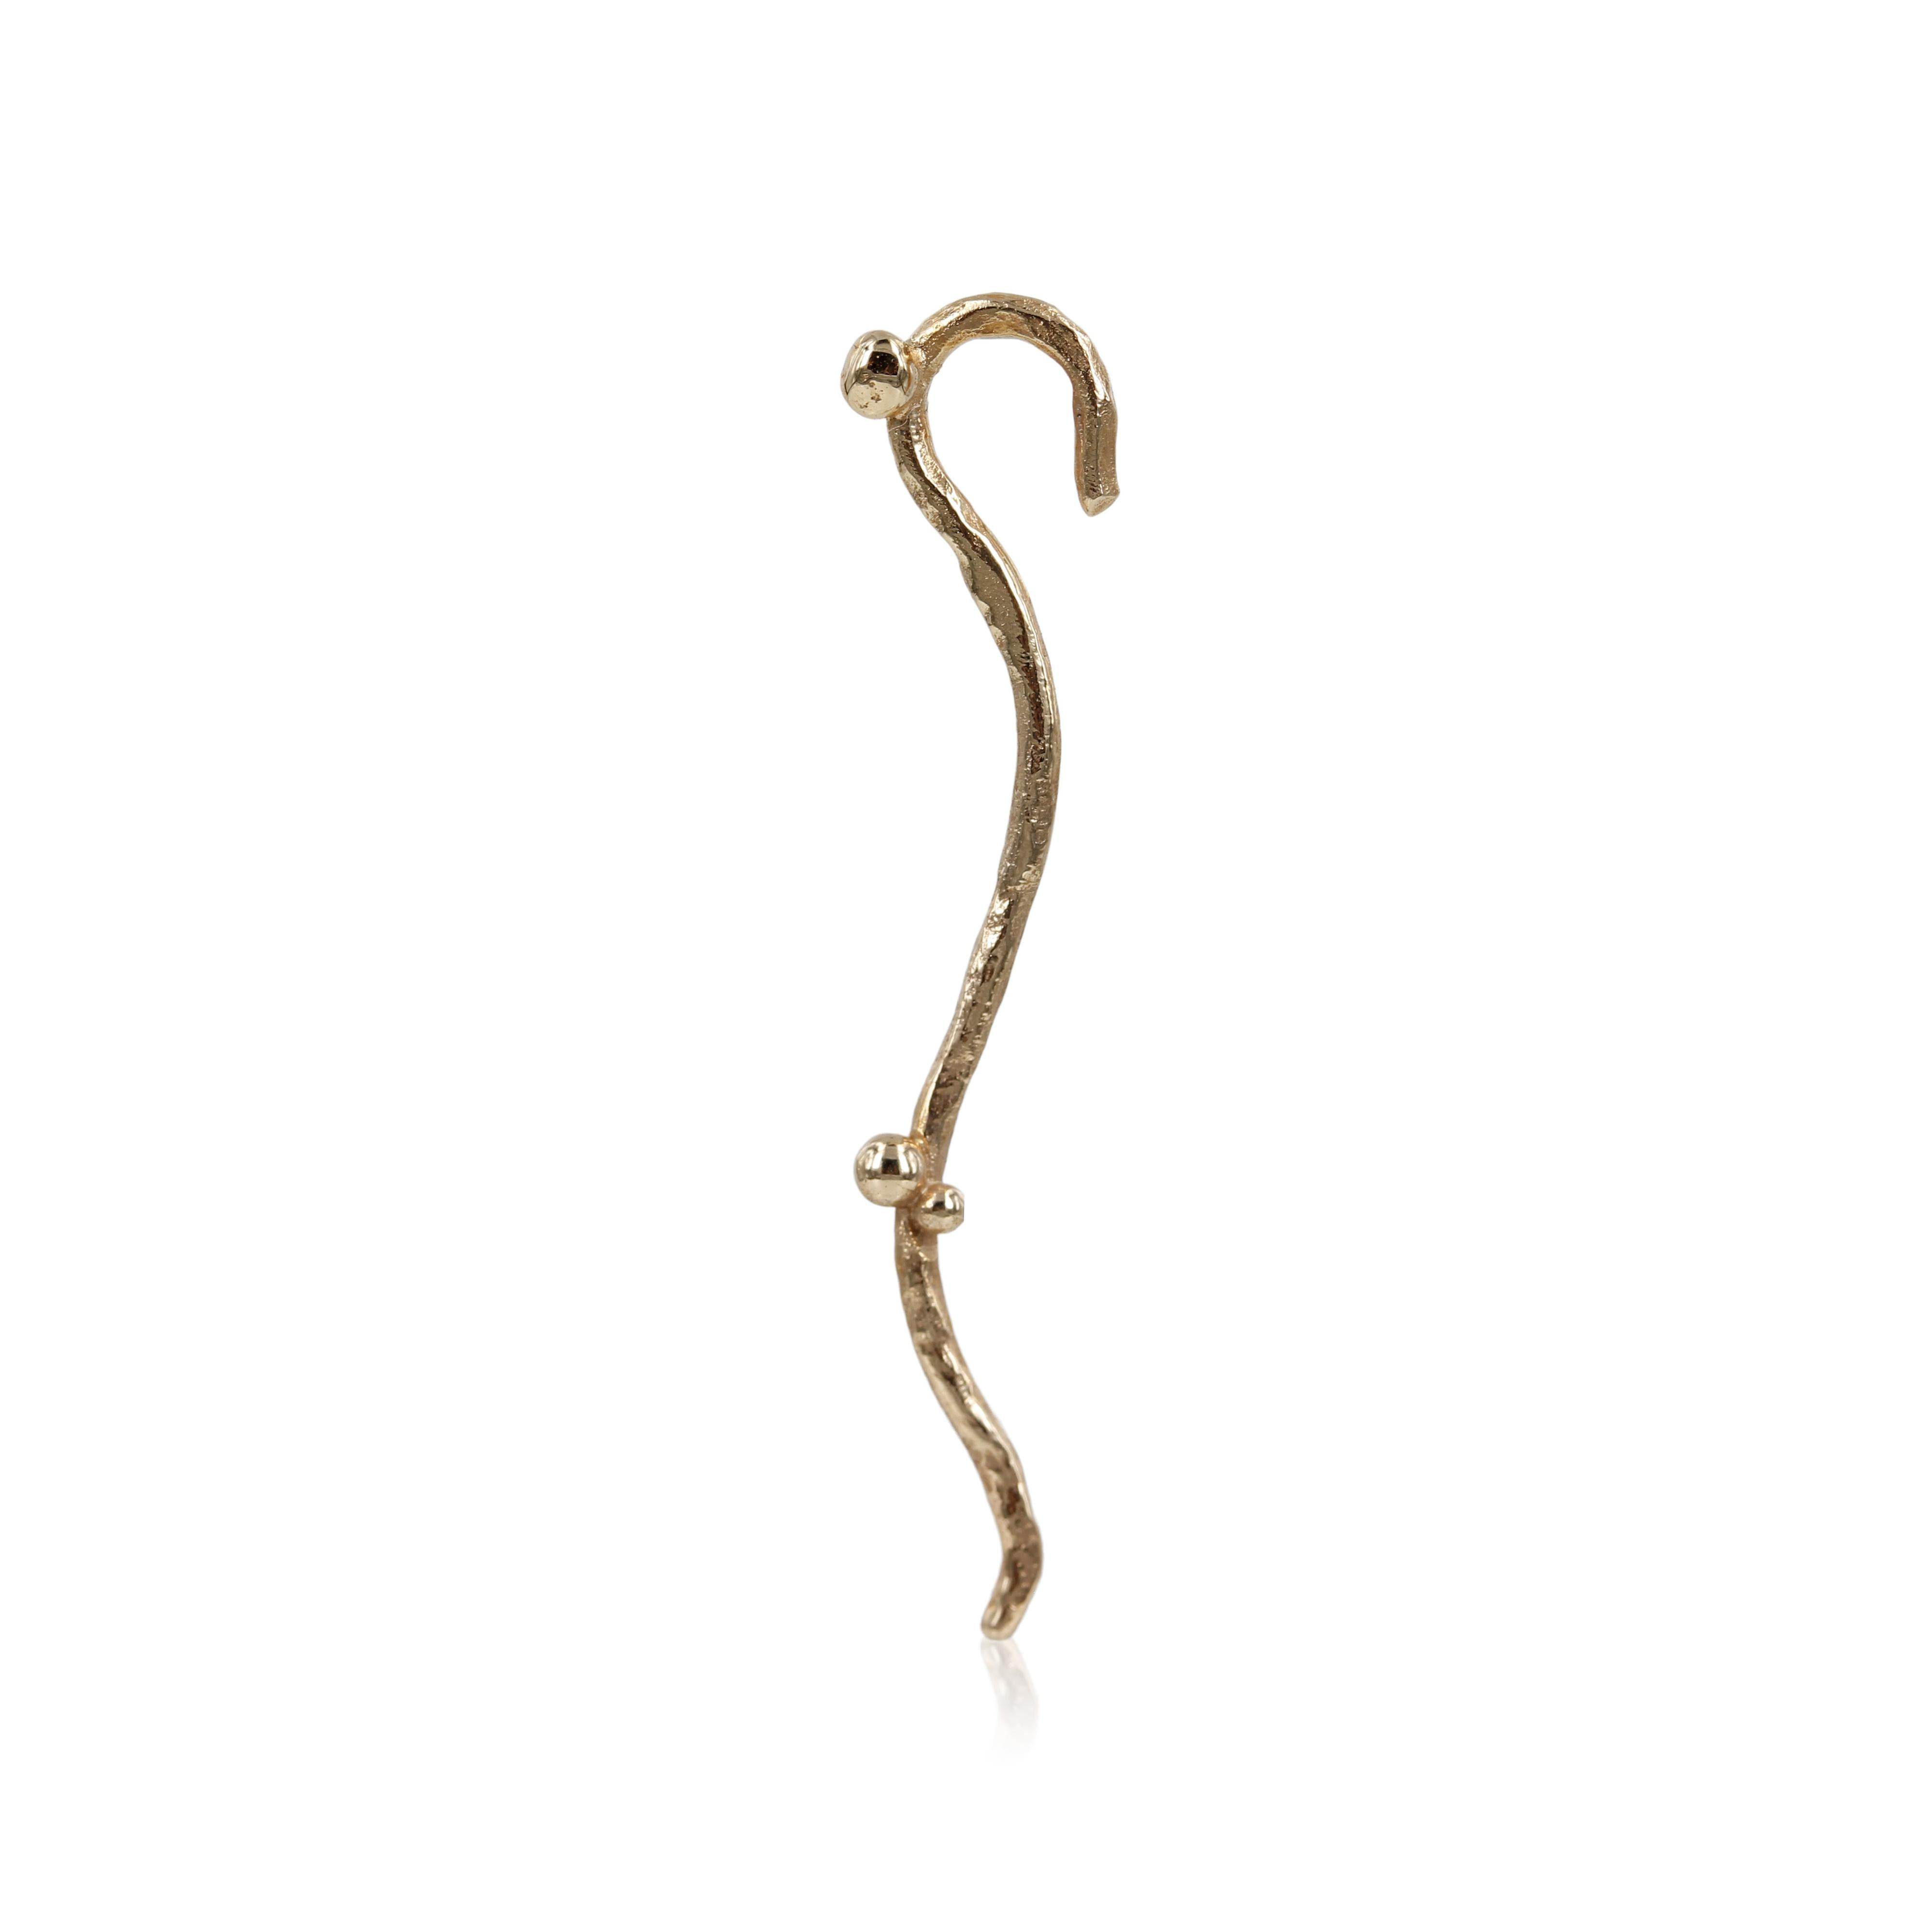 05-010. Infinity - 14 kt. Guld ørering  Denne ørering er skabt i 14 kt. guld.  Smuk unik ørering, med fin tråd af guld der falder fint fra øret, perlerne bliver særligt udvalgt til lige netop det smykke de sidder i.